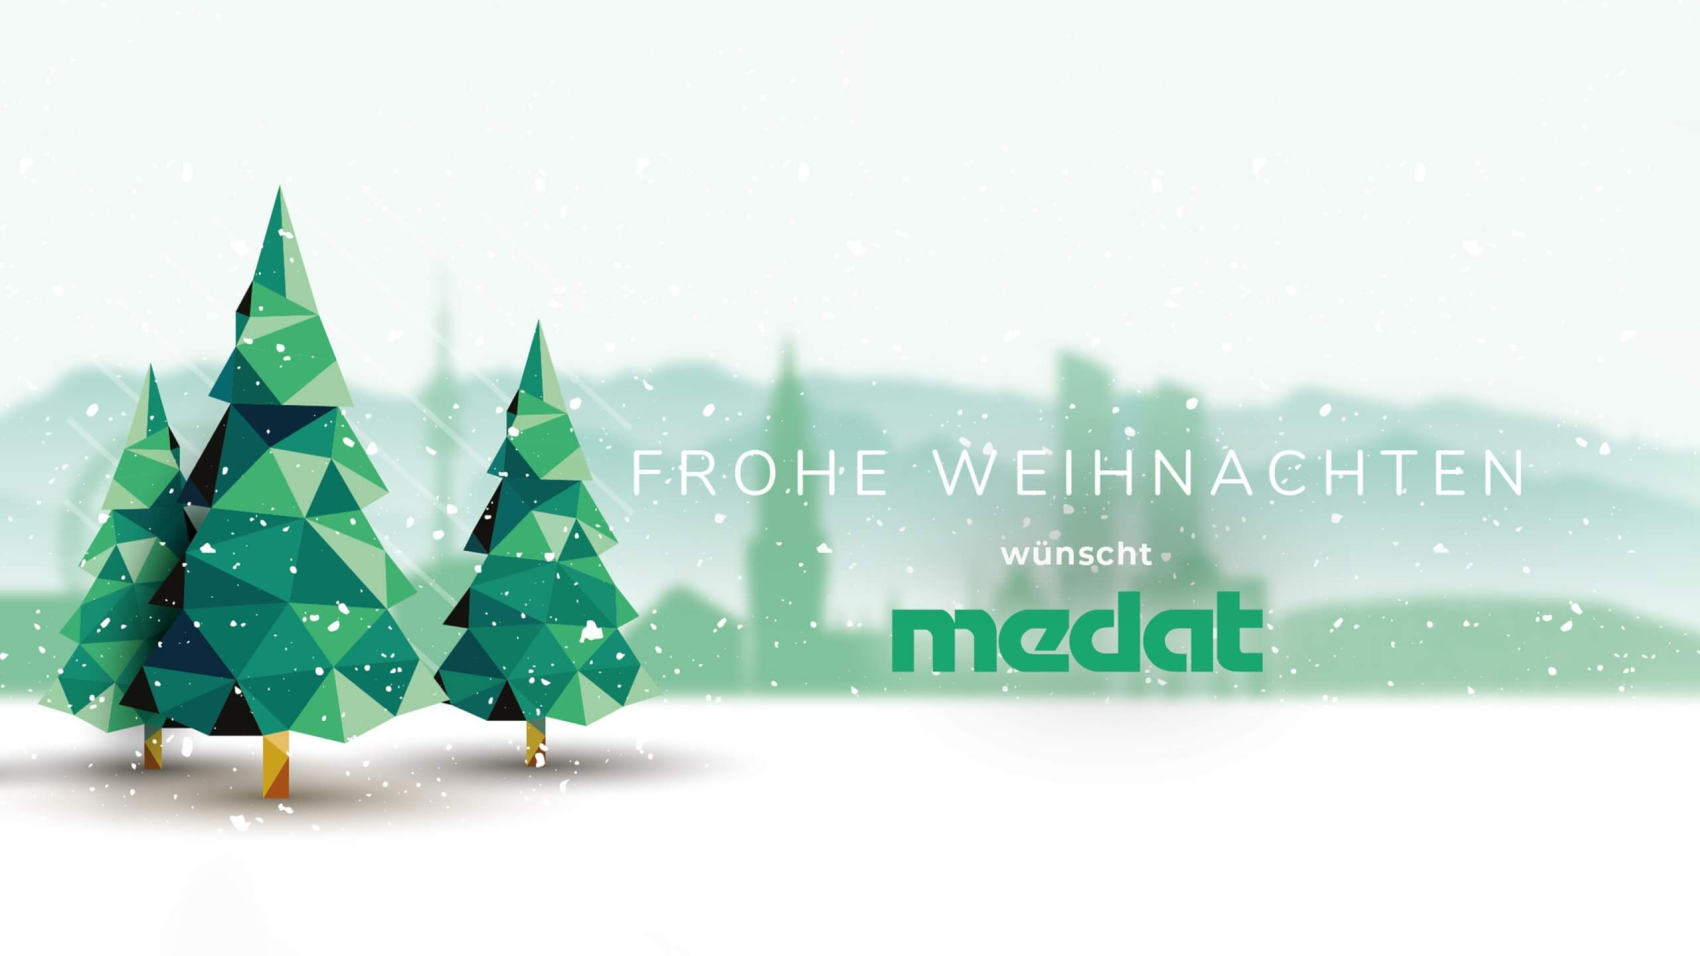 Weihnachtspopup für Medat. Grafik mit 3 Tannenbäumen, Schnee und der grünen München Skyline im Hintergrund.